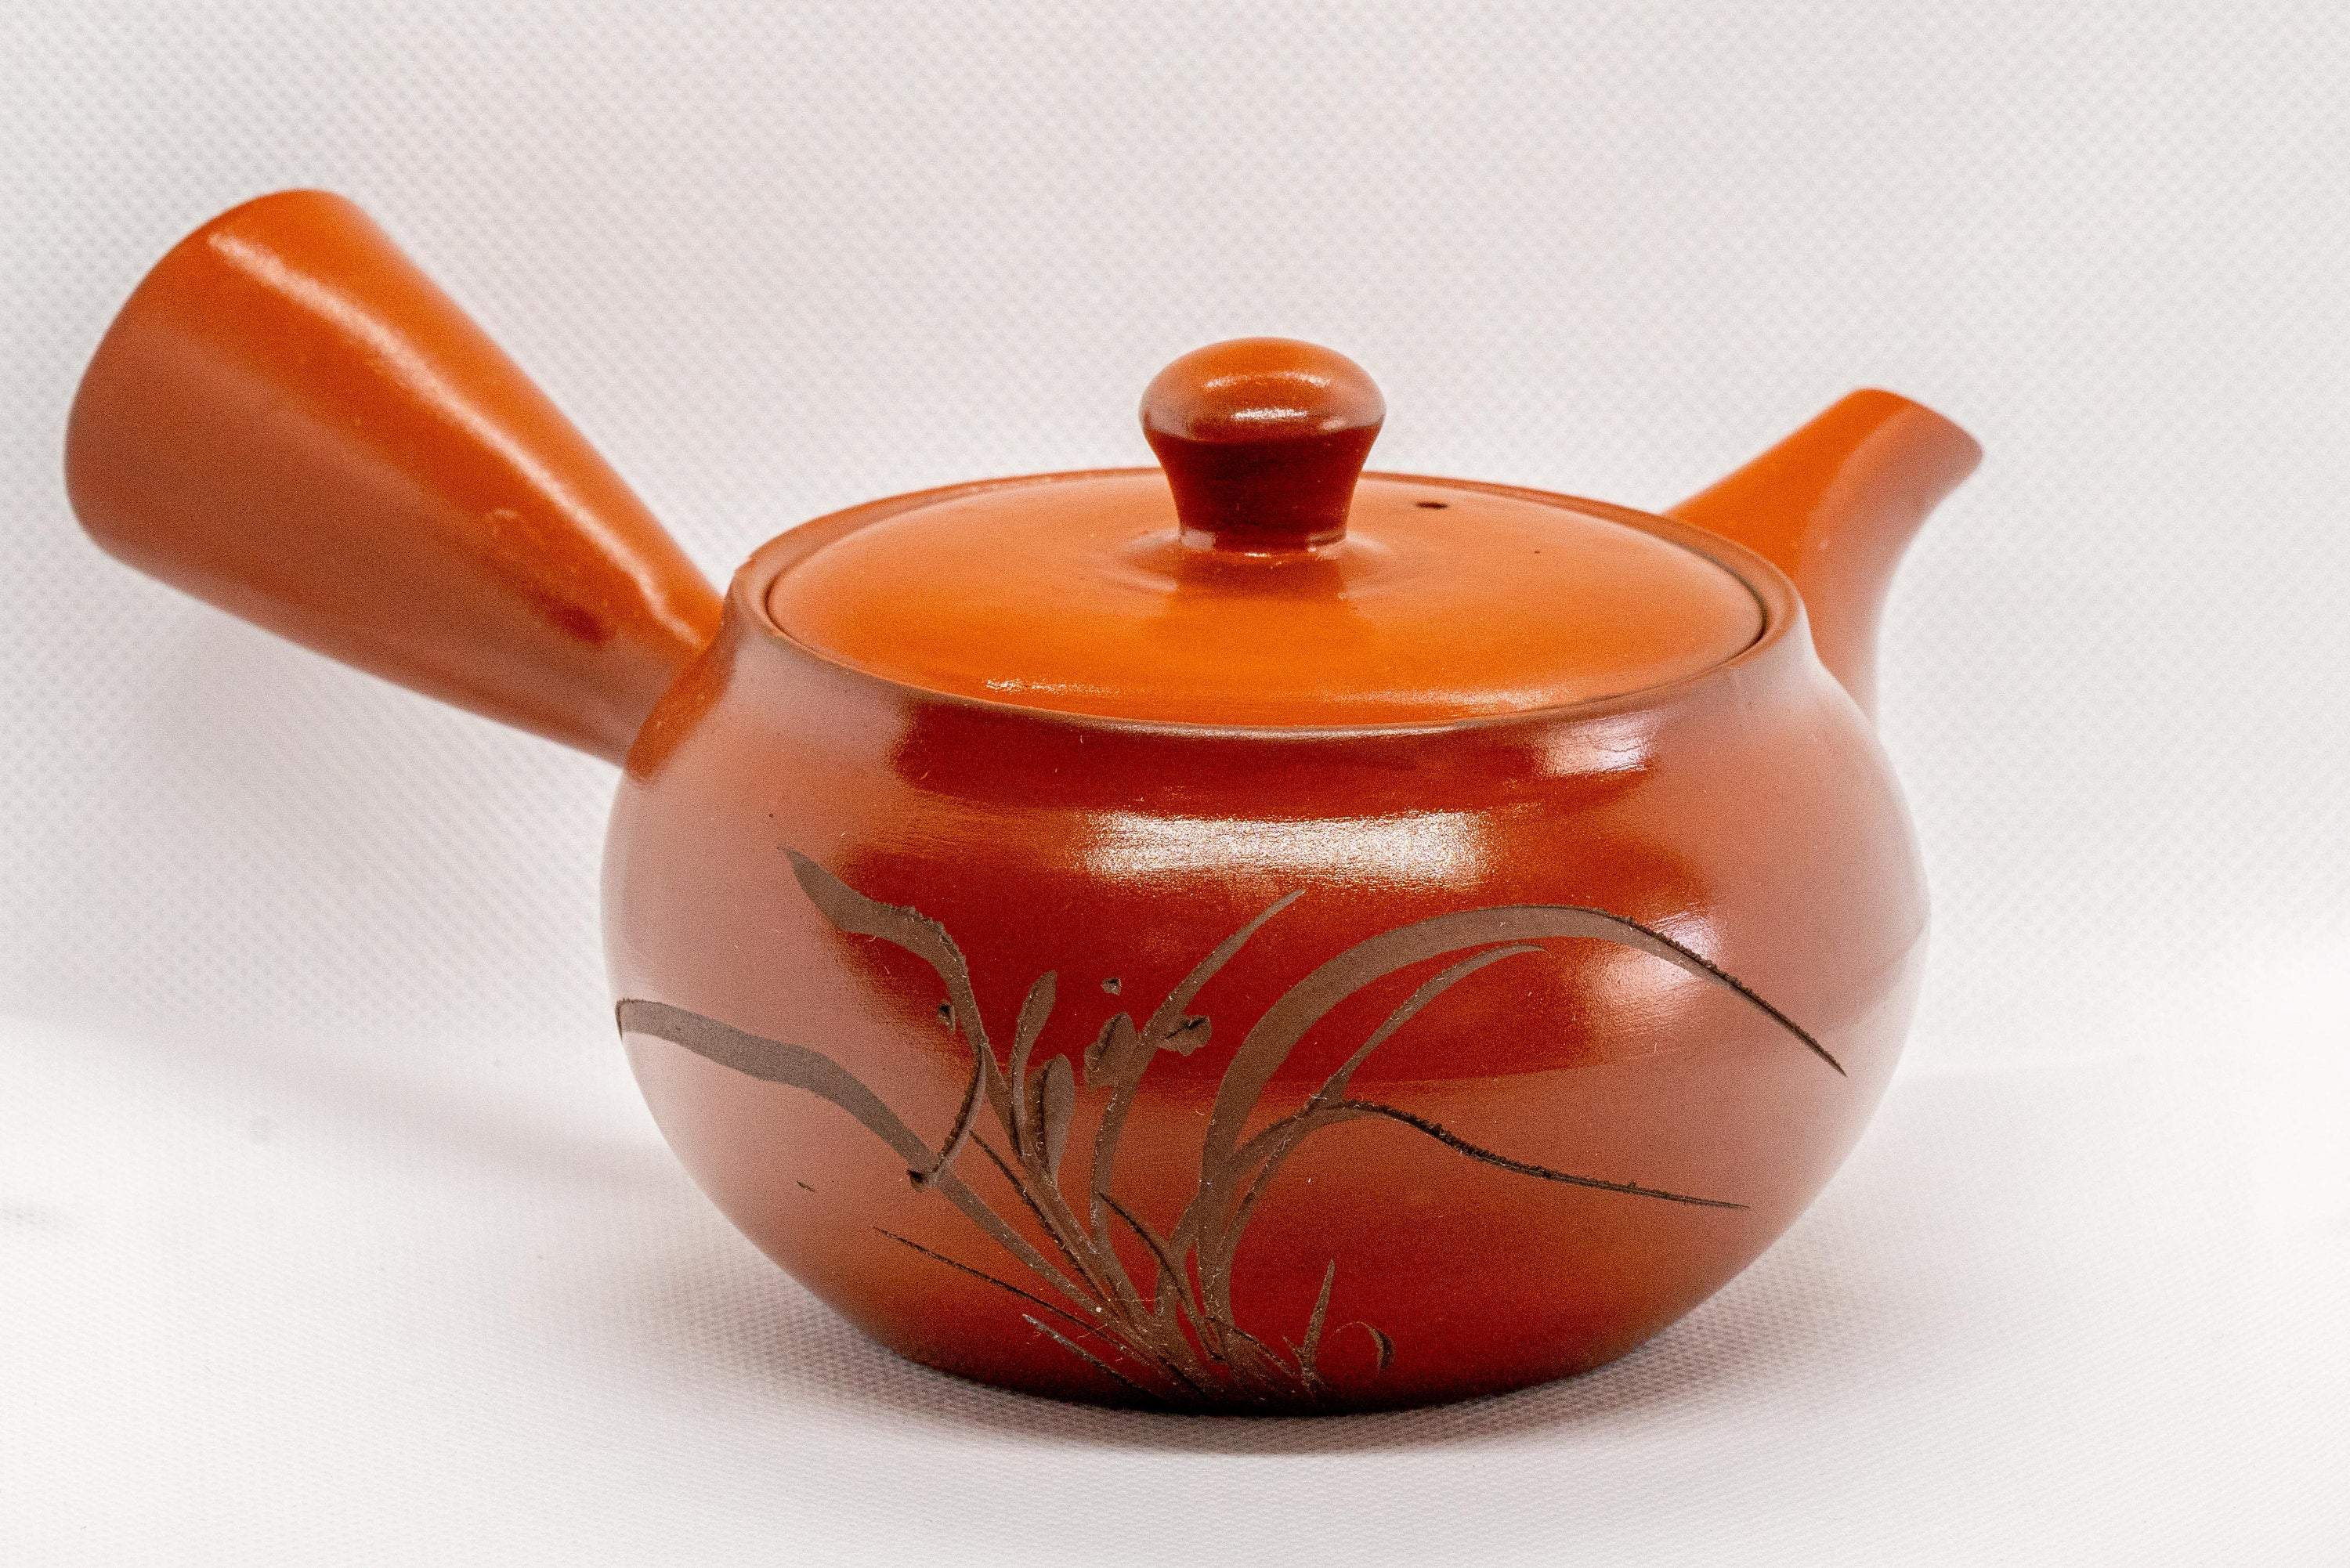 Japanese Kyusu - Tokoname-yaki Ceramic Teapot with Mesh Strainer - 300ml - Tezumi